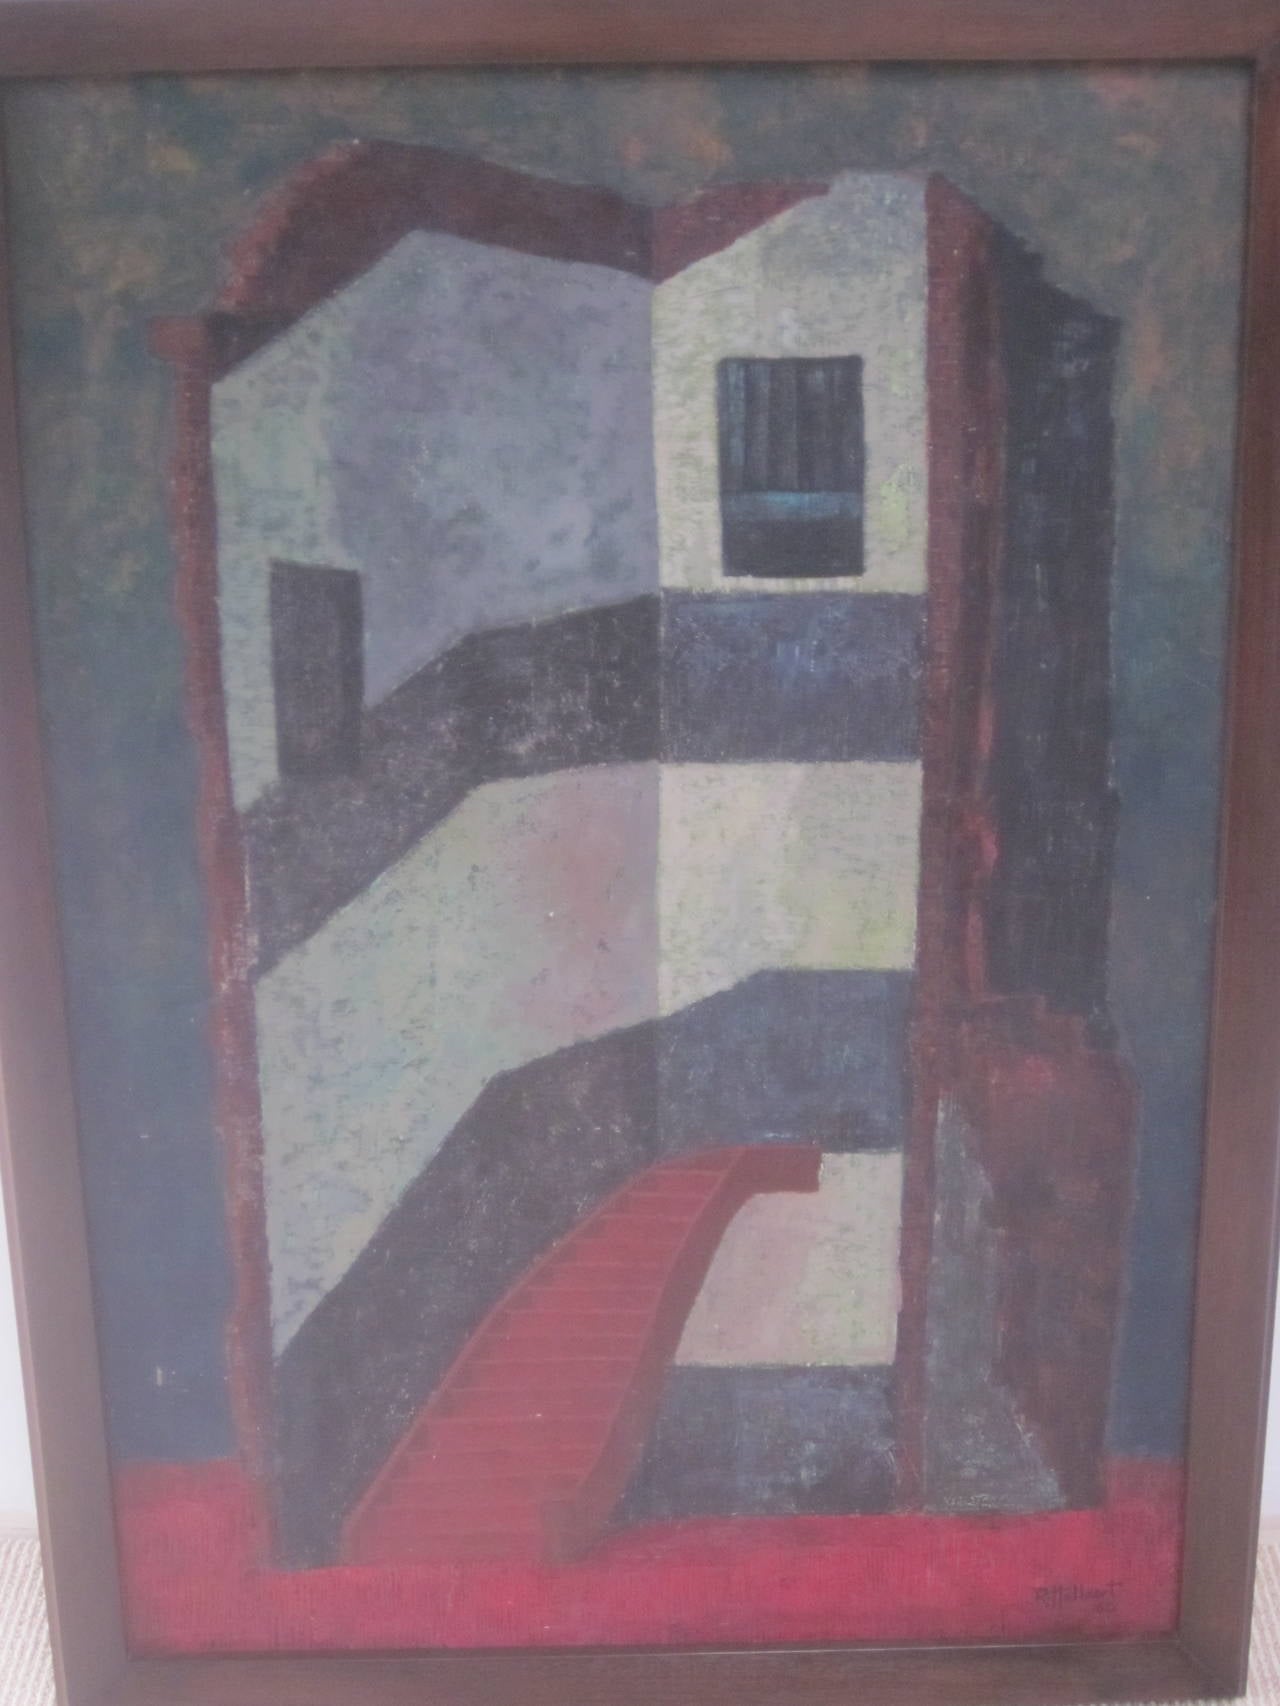 Peinture à l'huile signée R. Hullaert.

Peint d'un point de vue architectural avec un escalier menant à l'intérieur, le tableau fait référence à un thème surréaliste / métaphysique d'accès à l'inconscient et à l'état de rêve.

Références : Art